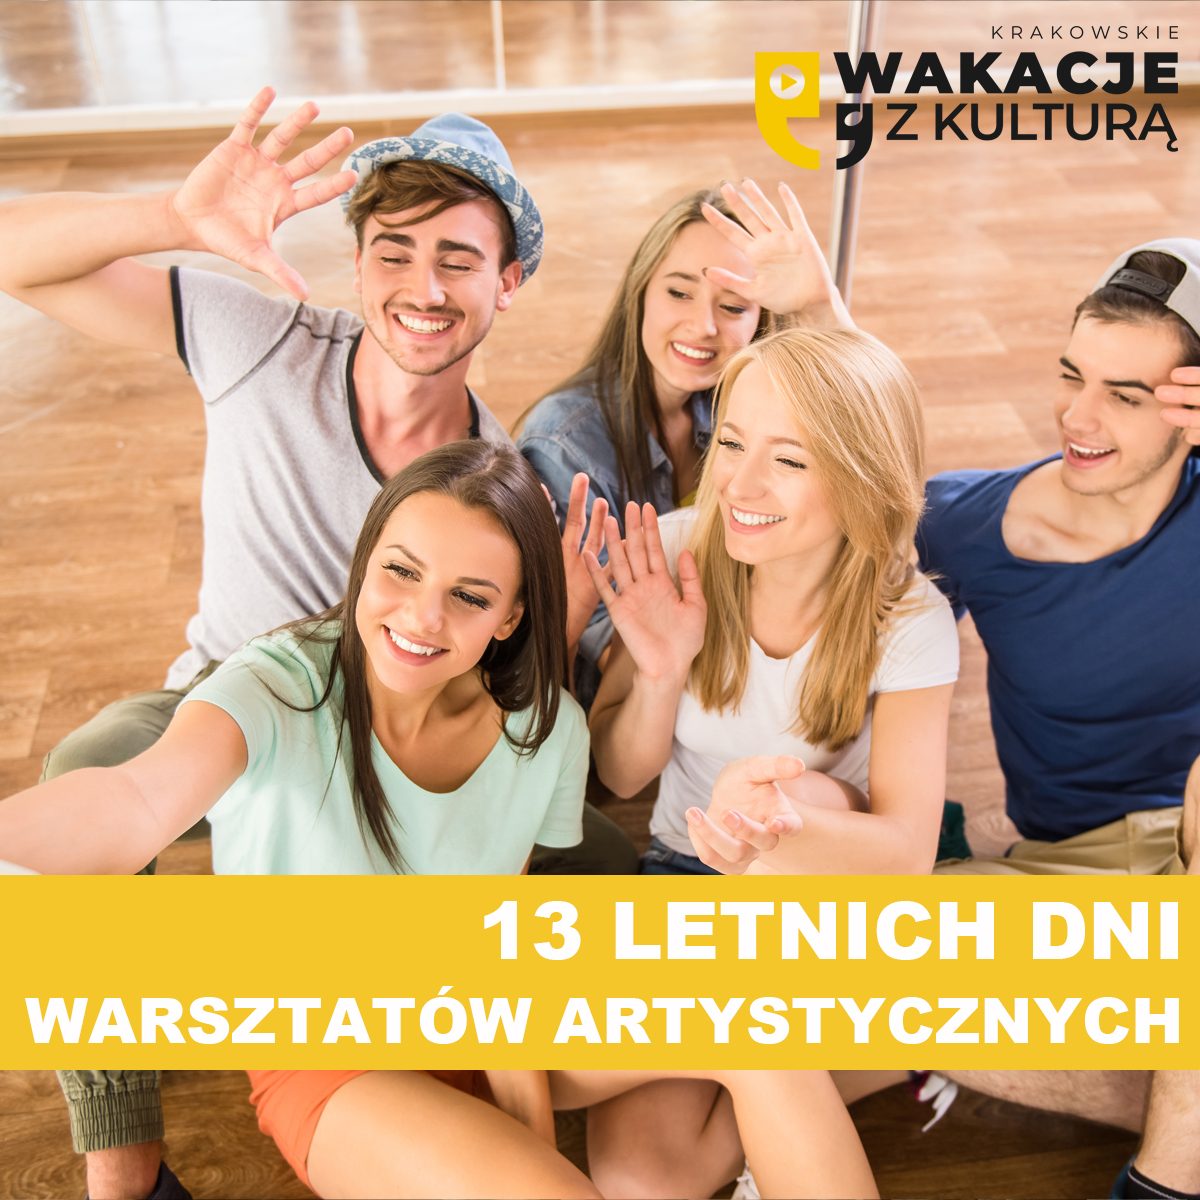 Krakowskie wakacje z kulturą - warsztaty artystyczne dla młodzieży